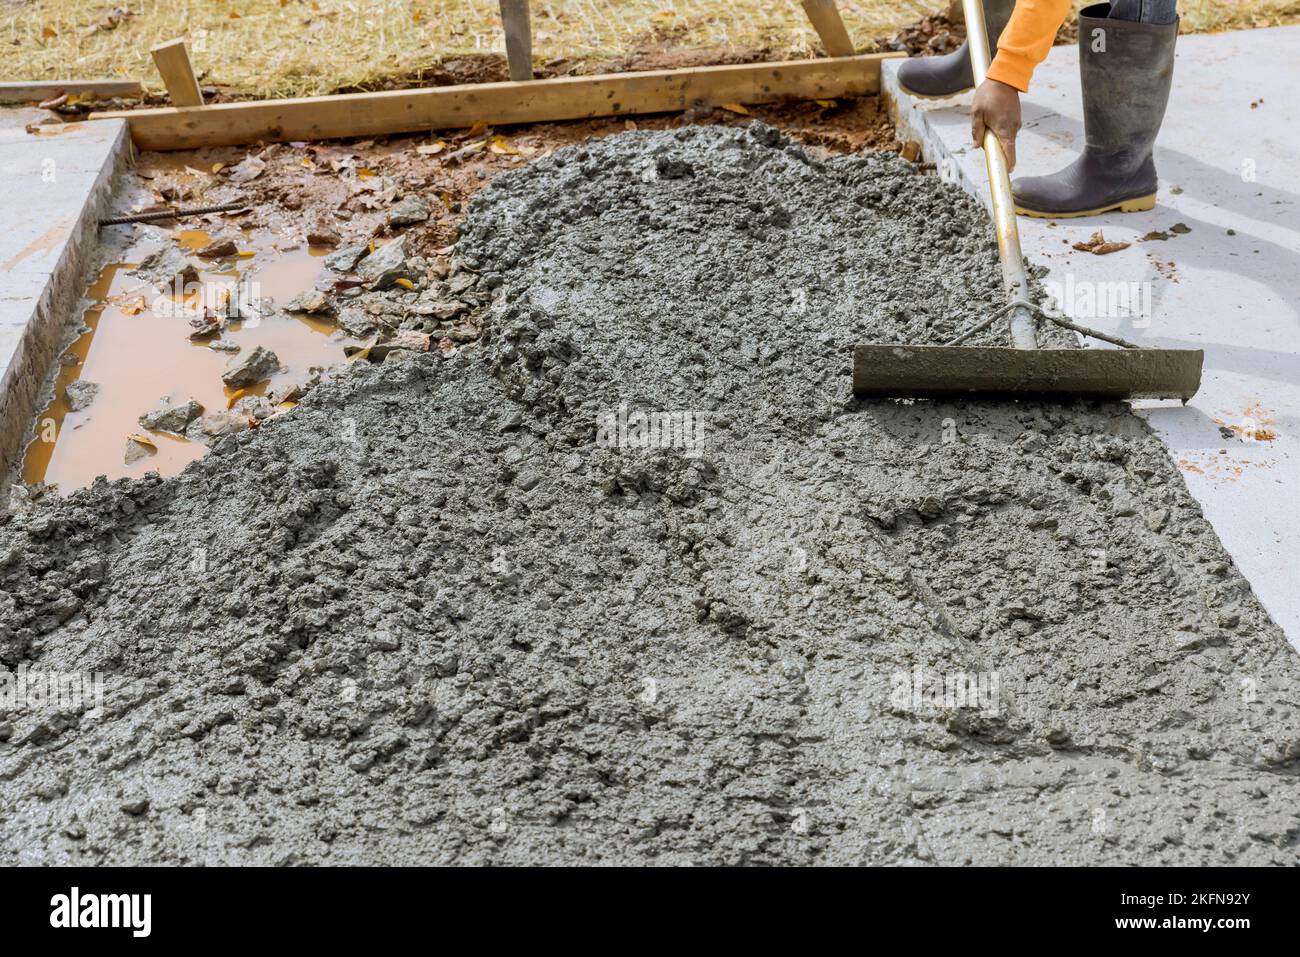 Le travailleur tient une truelle en acier pour lisser le sol sur un trottoir en béton fraîchement coulé dans la zone de construction Banque D'Images